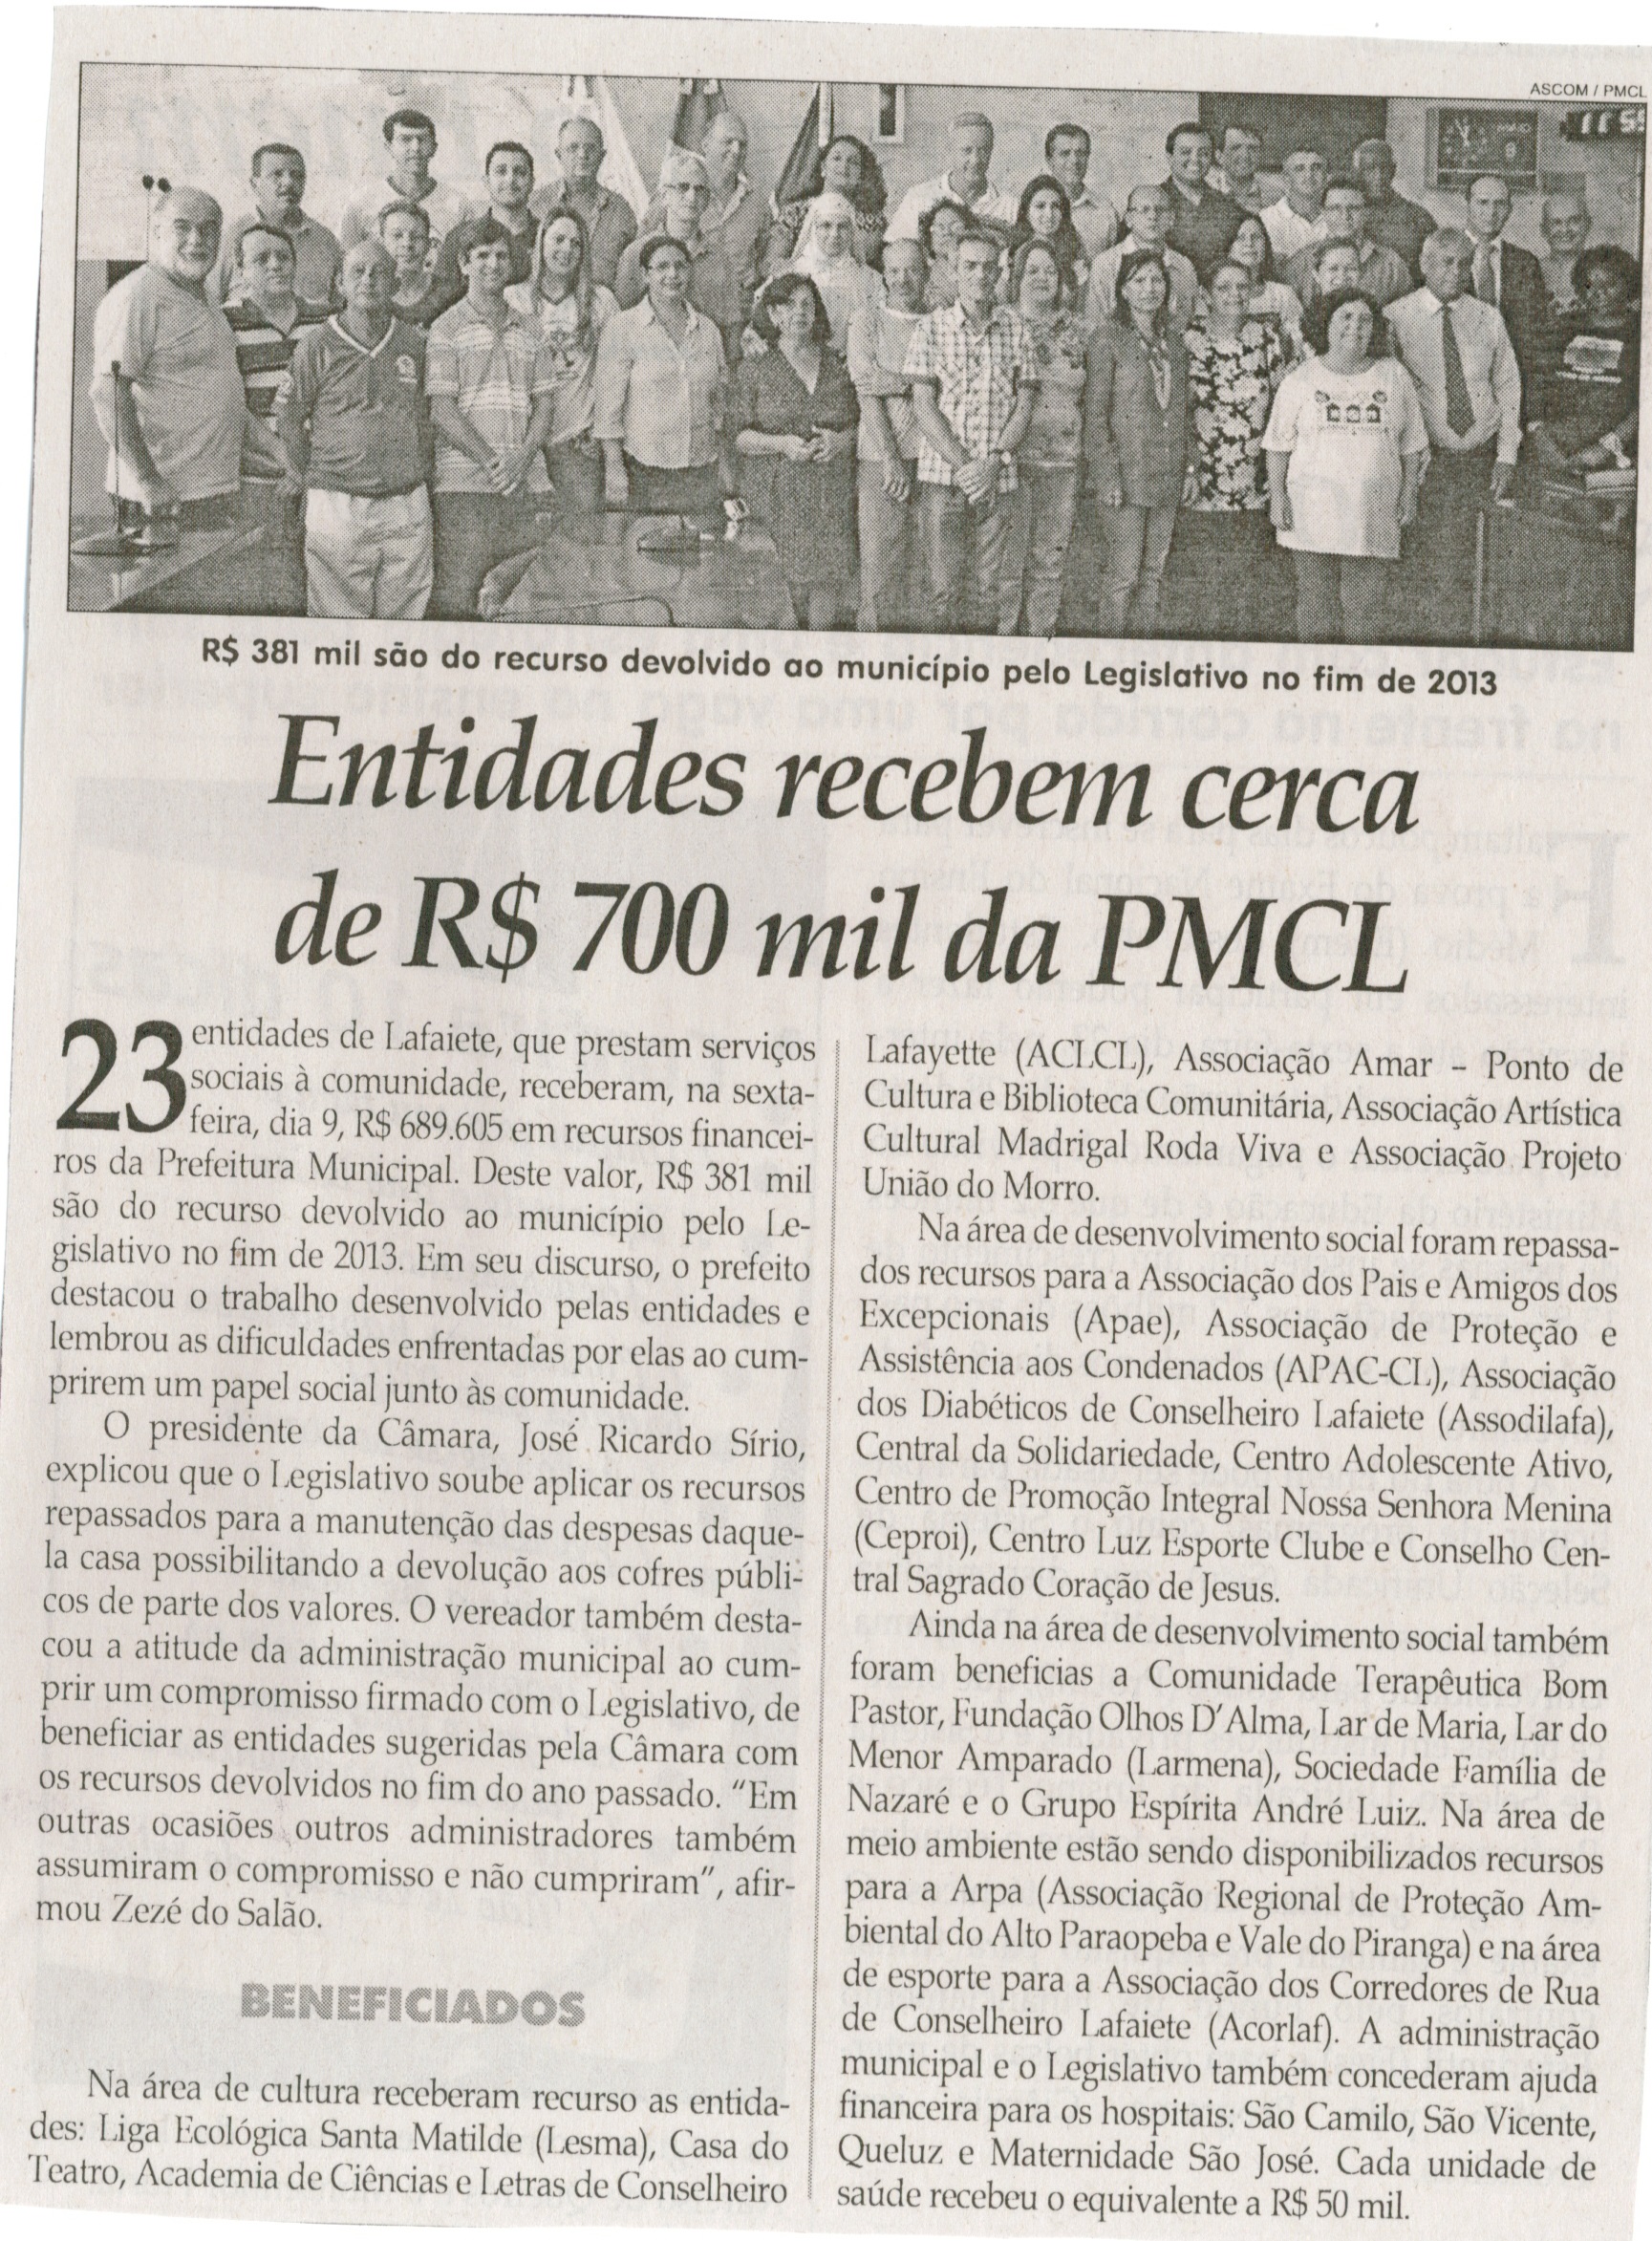 Entidades recebem cerca de 700 mil da PMCL. Jornal Correio da Cidade, Conselheiro Lafaiete,  17 mai. 2014, p. 19.